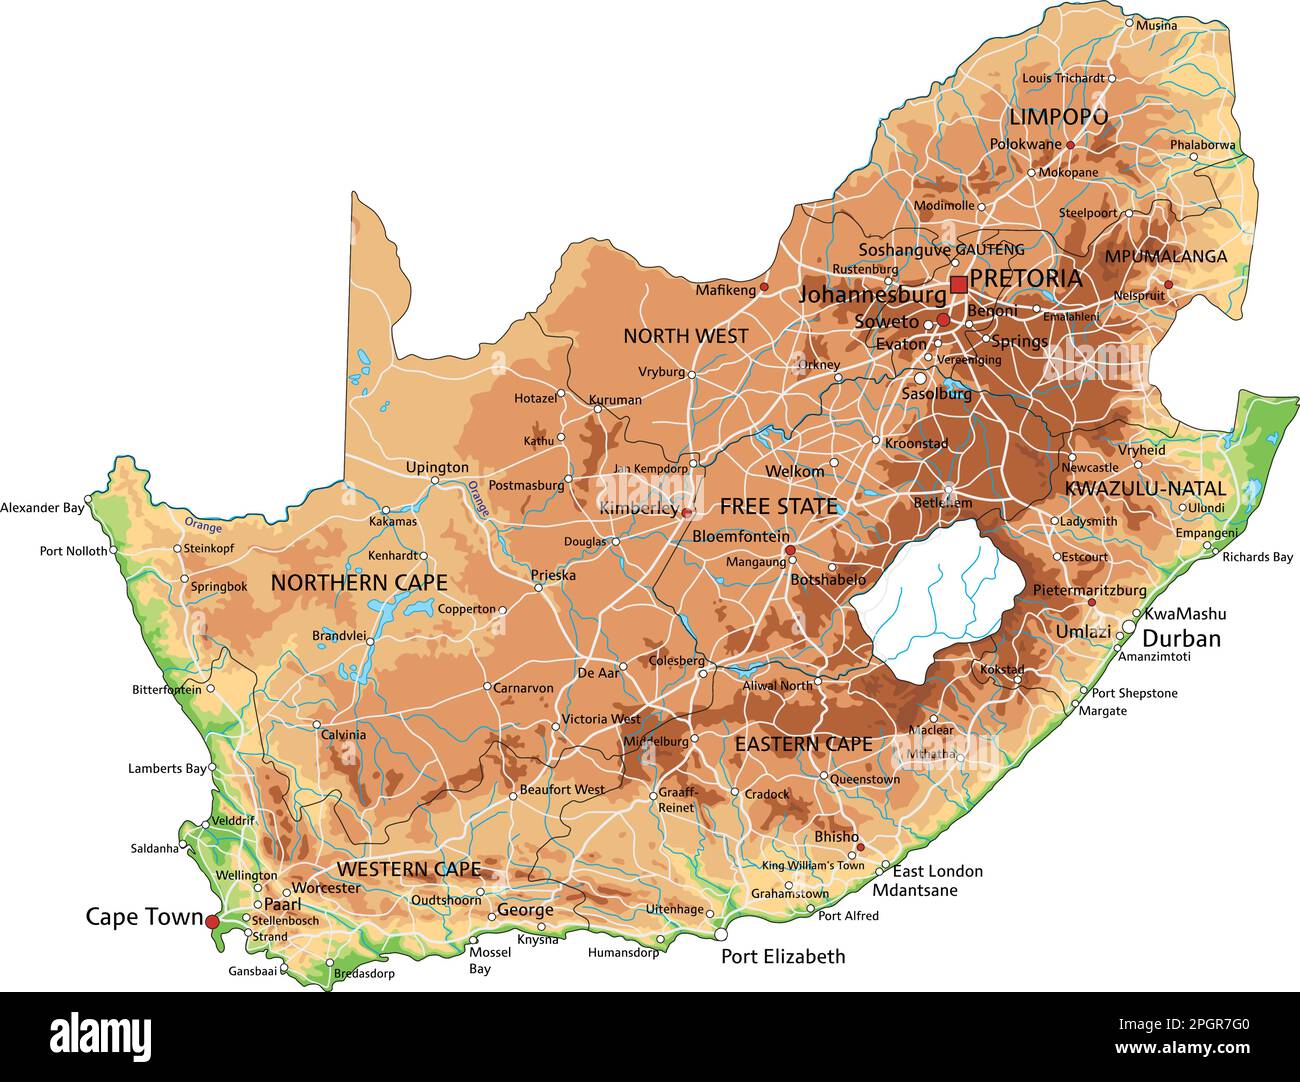 Hochdetaillierte physische Karte Südafrikas mit Beschriftung. Stock Vektor